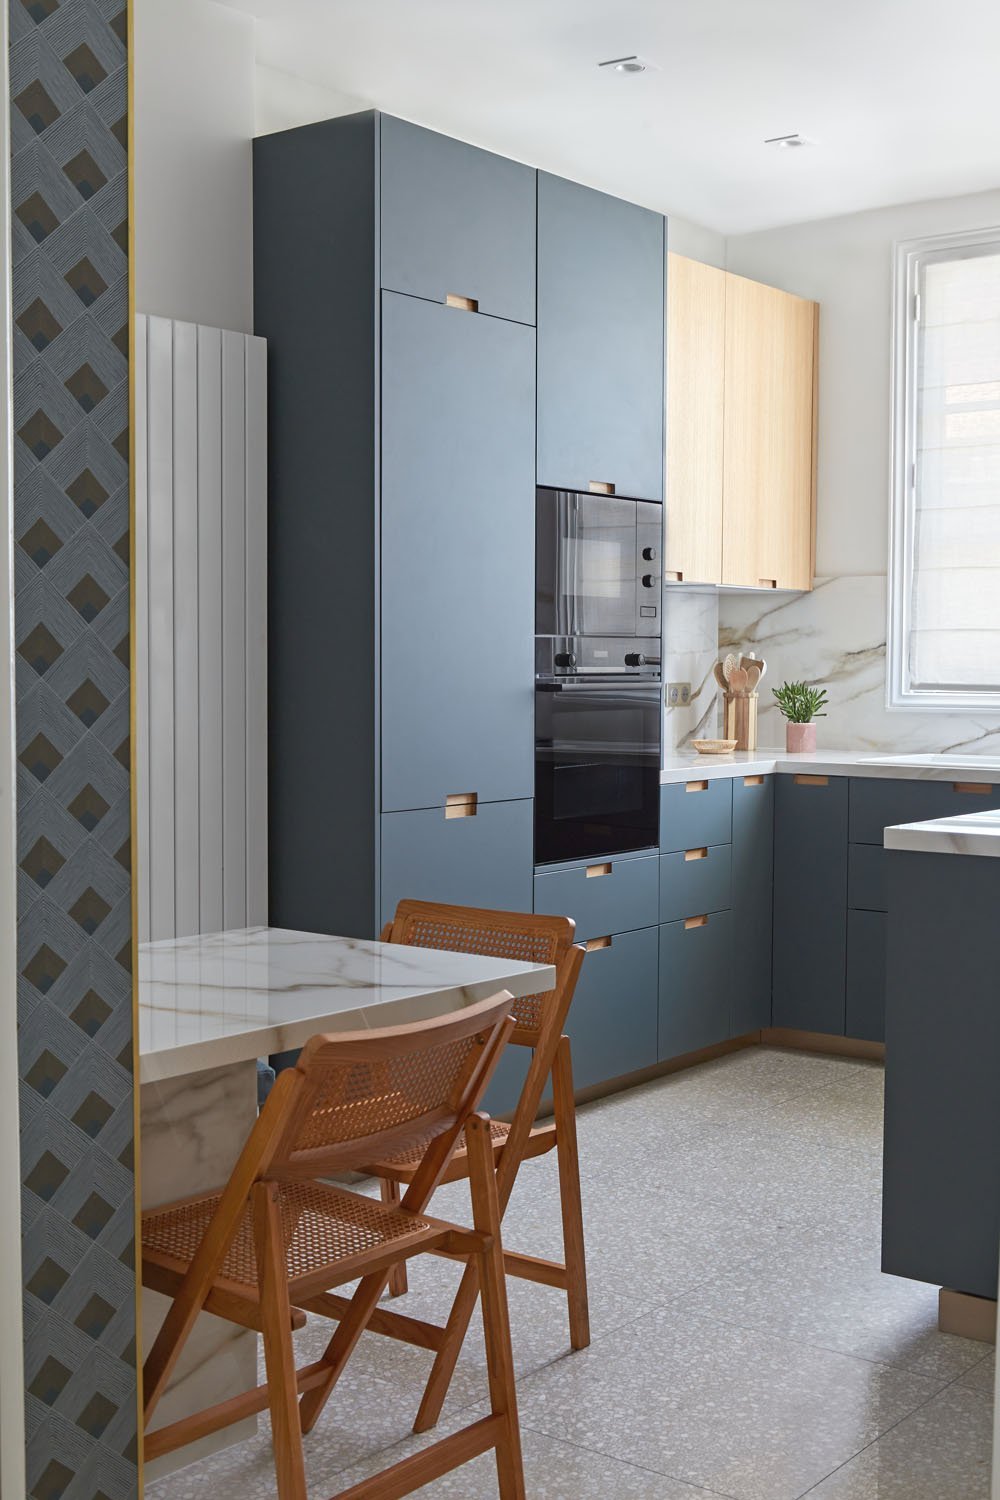 lichelle-silvestry-interior-design-miromesnil-kitchen-blue-walls.jpg